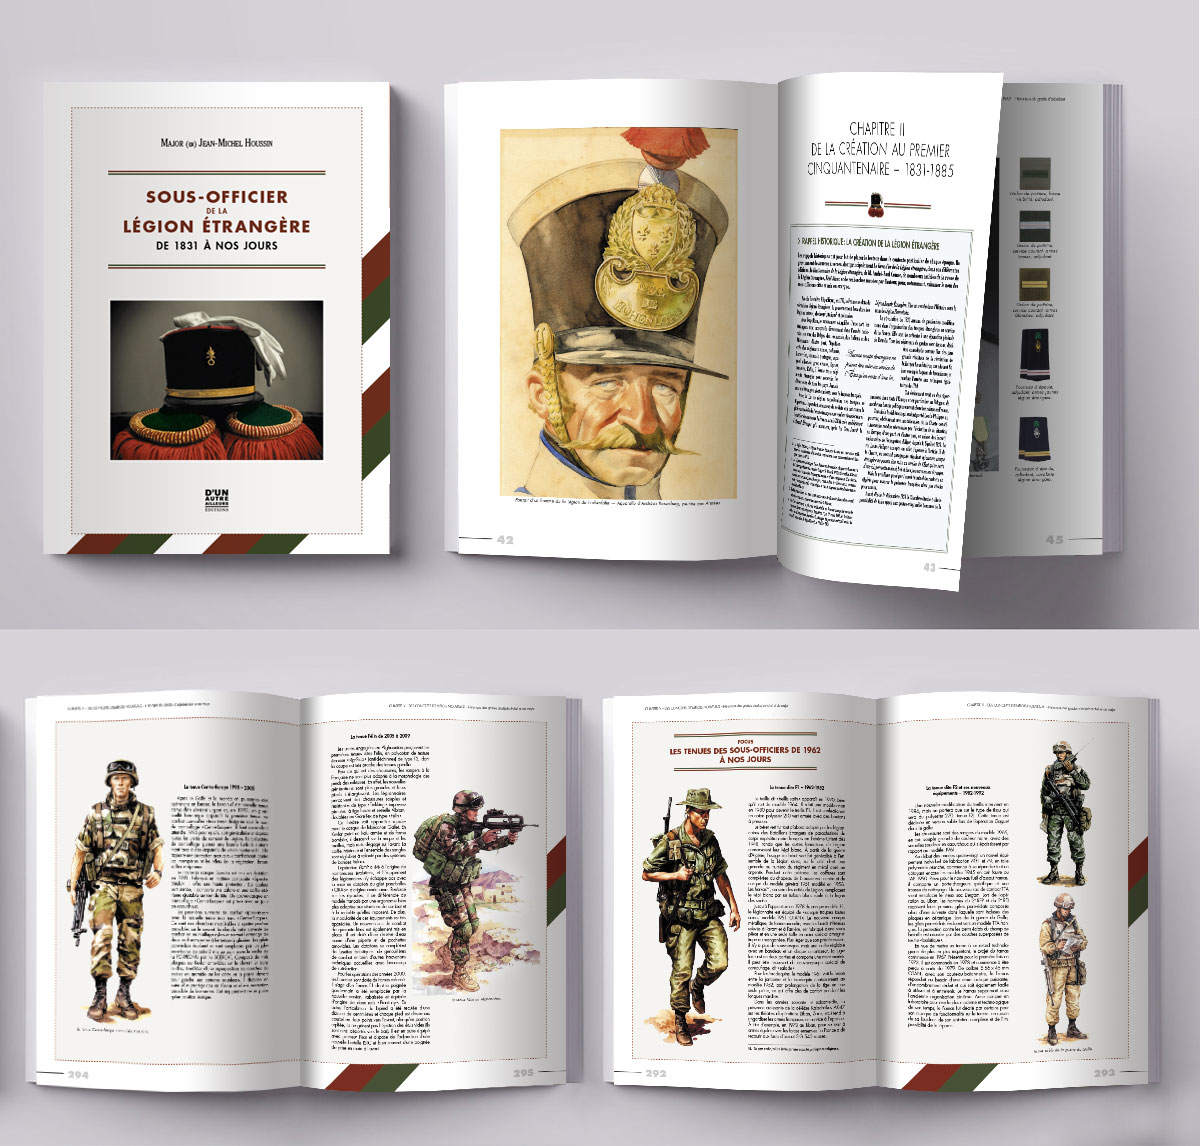 Création et mise en page de livres d'histoire sur les sous-officier de la légion étrangère